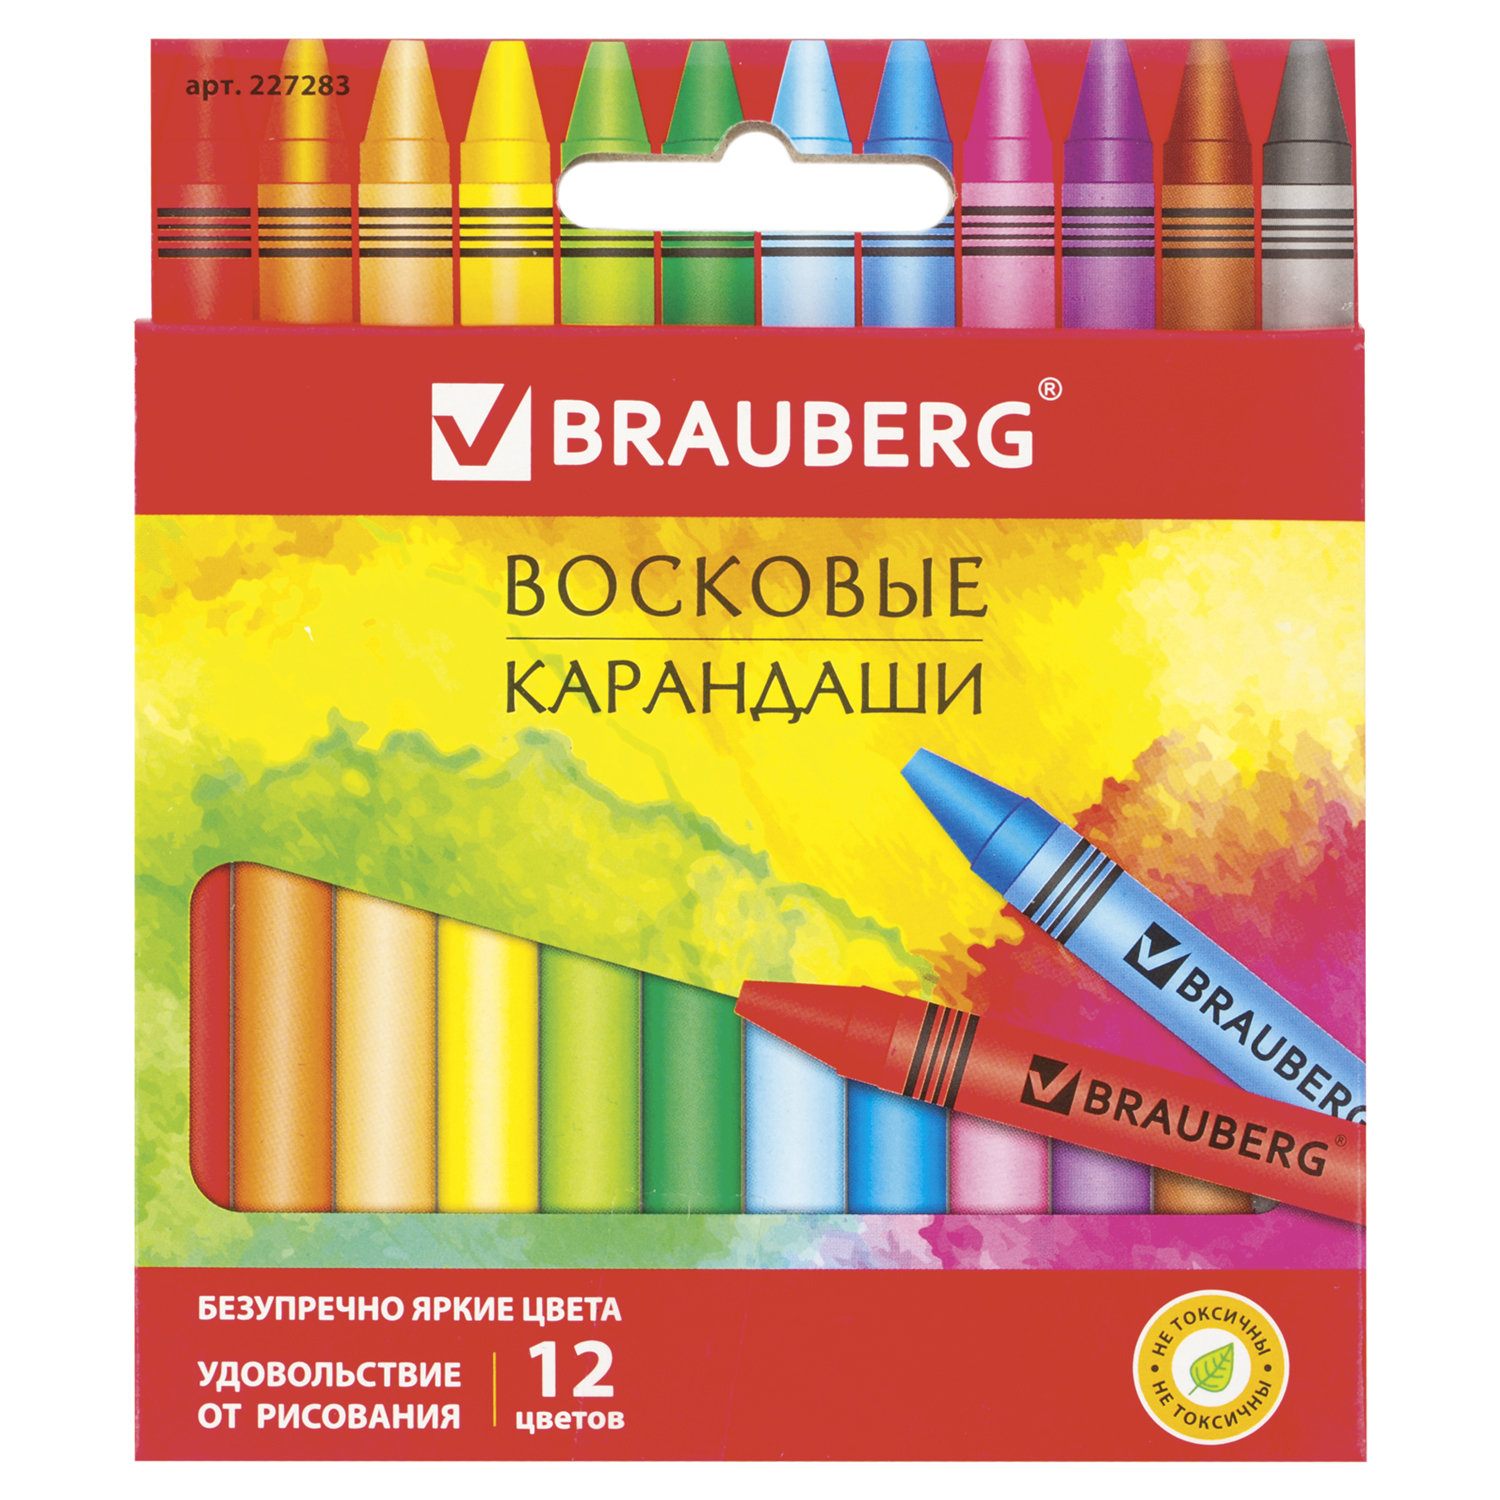 Купить Восковые карандаши BRAUBERG АКАДЕМИЯ 12 цветов 227283, Greenwich Line,